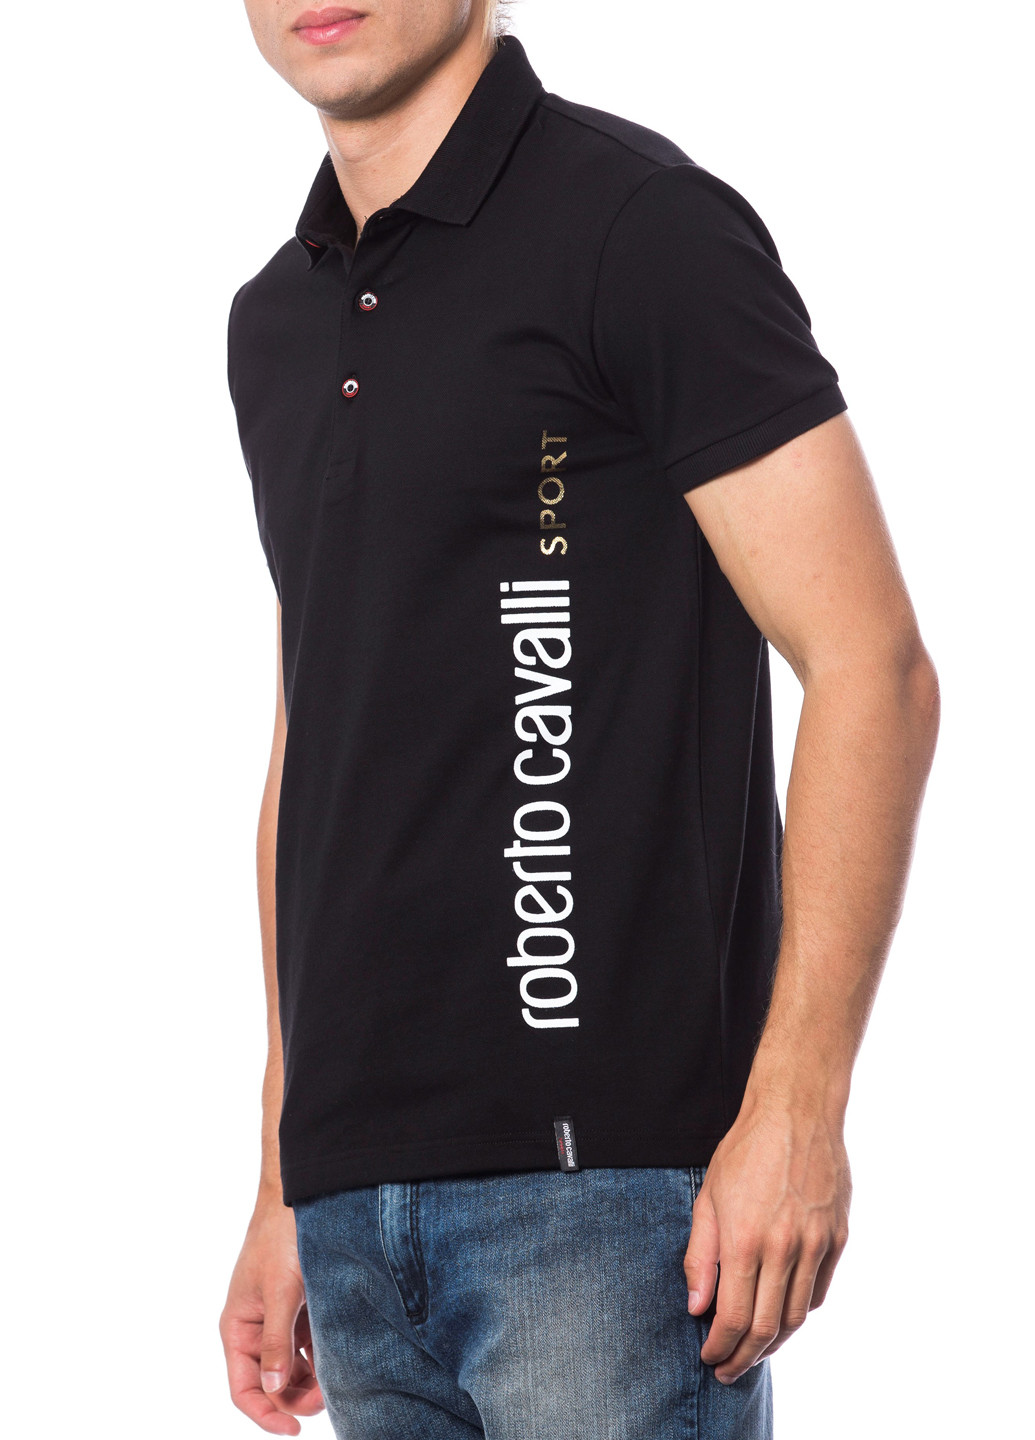 Черная футболка-поло для мужчин Roberto Cavalli с логотипом